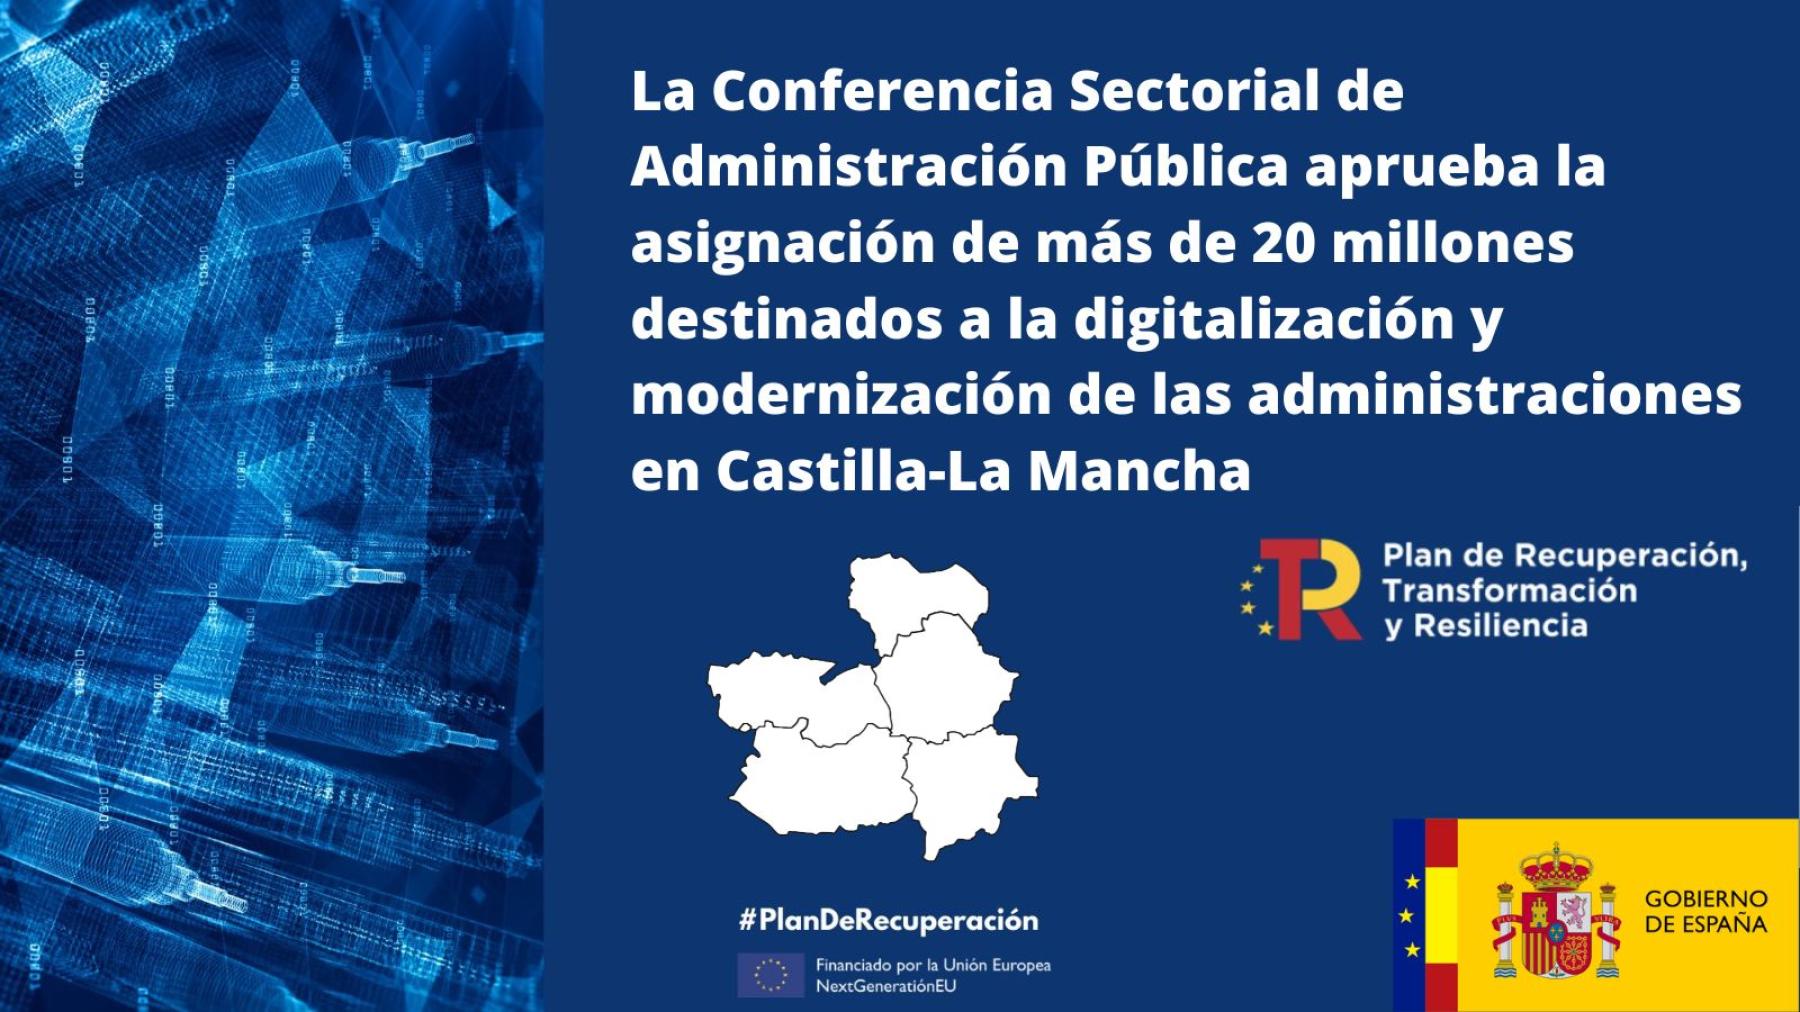 La Conferencia Sectorial de Administración Pública aprueba la asignación de más de 20 millones destinados a la digitalización y modernización de las administraciones en Castilla-La Mancha